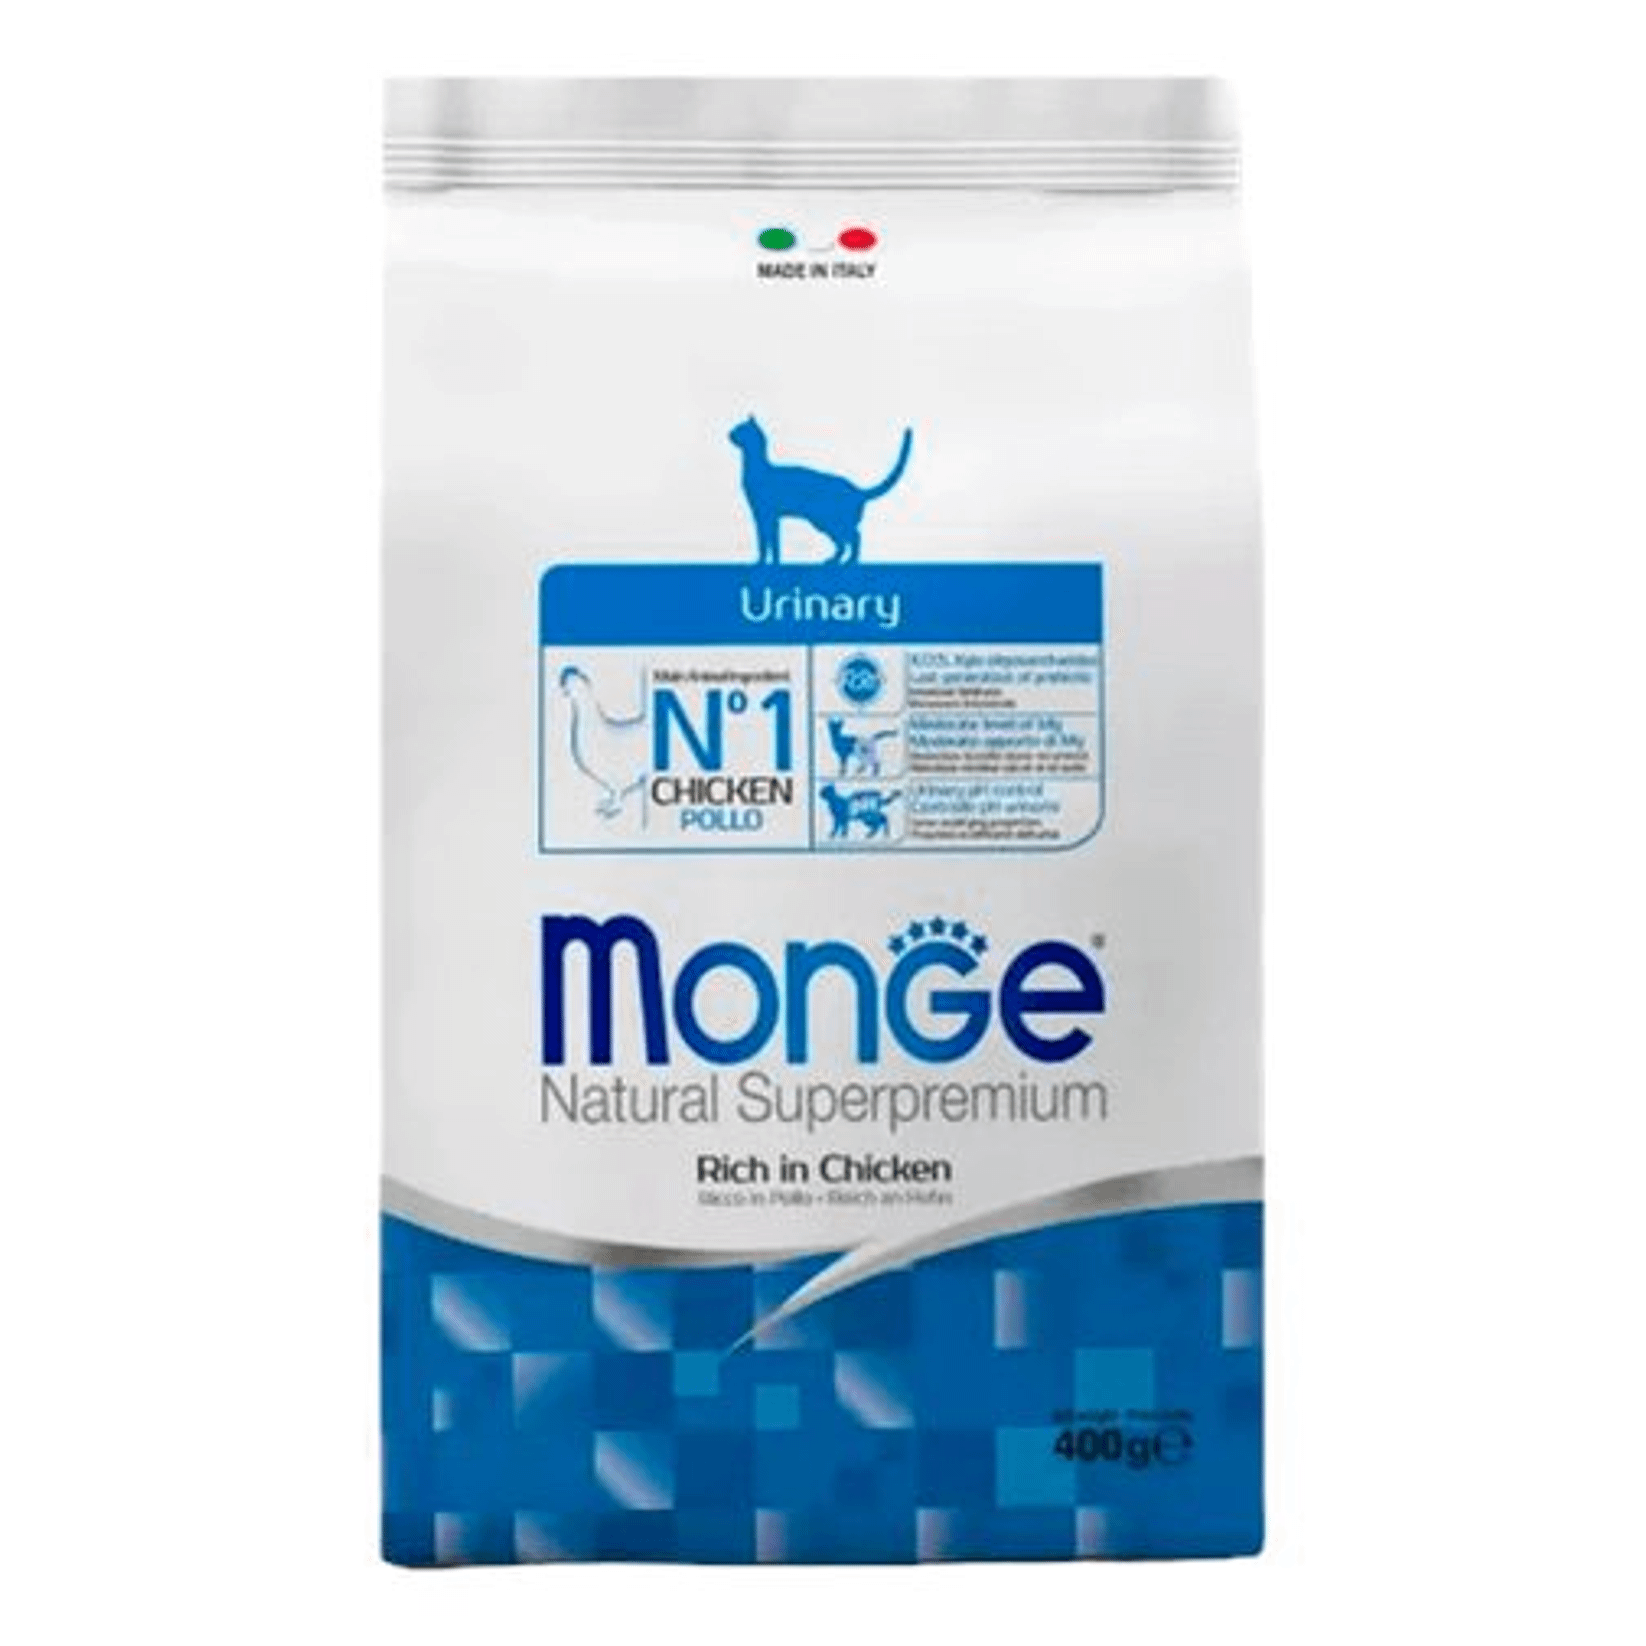 Сухой корм для кошек Monge Cat Urinary, профилактика мочекаменной болезни, 400 г